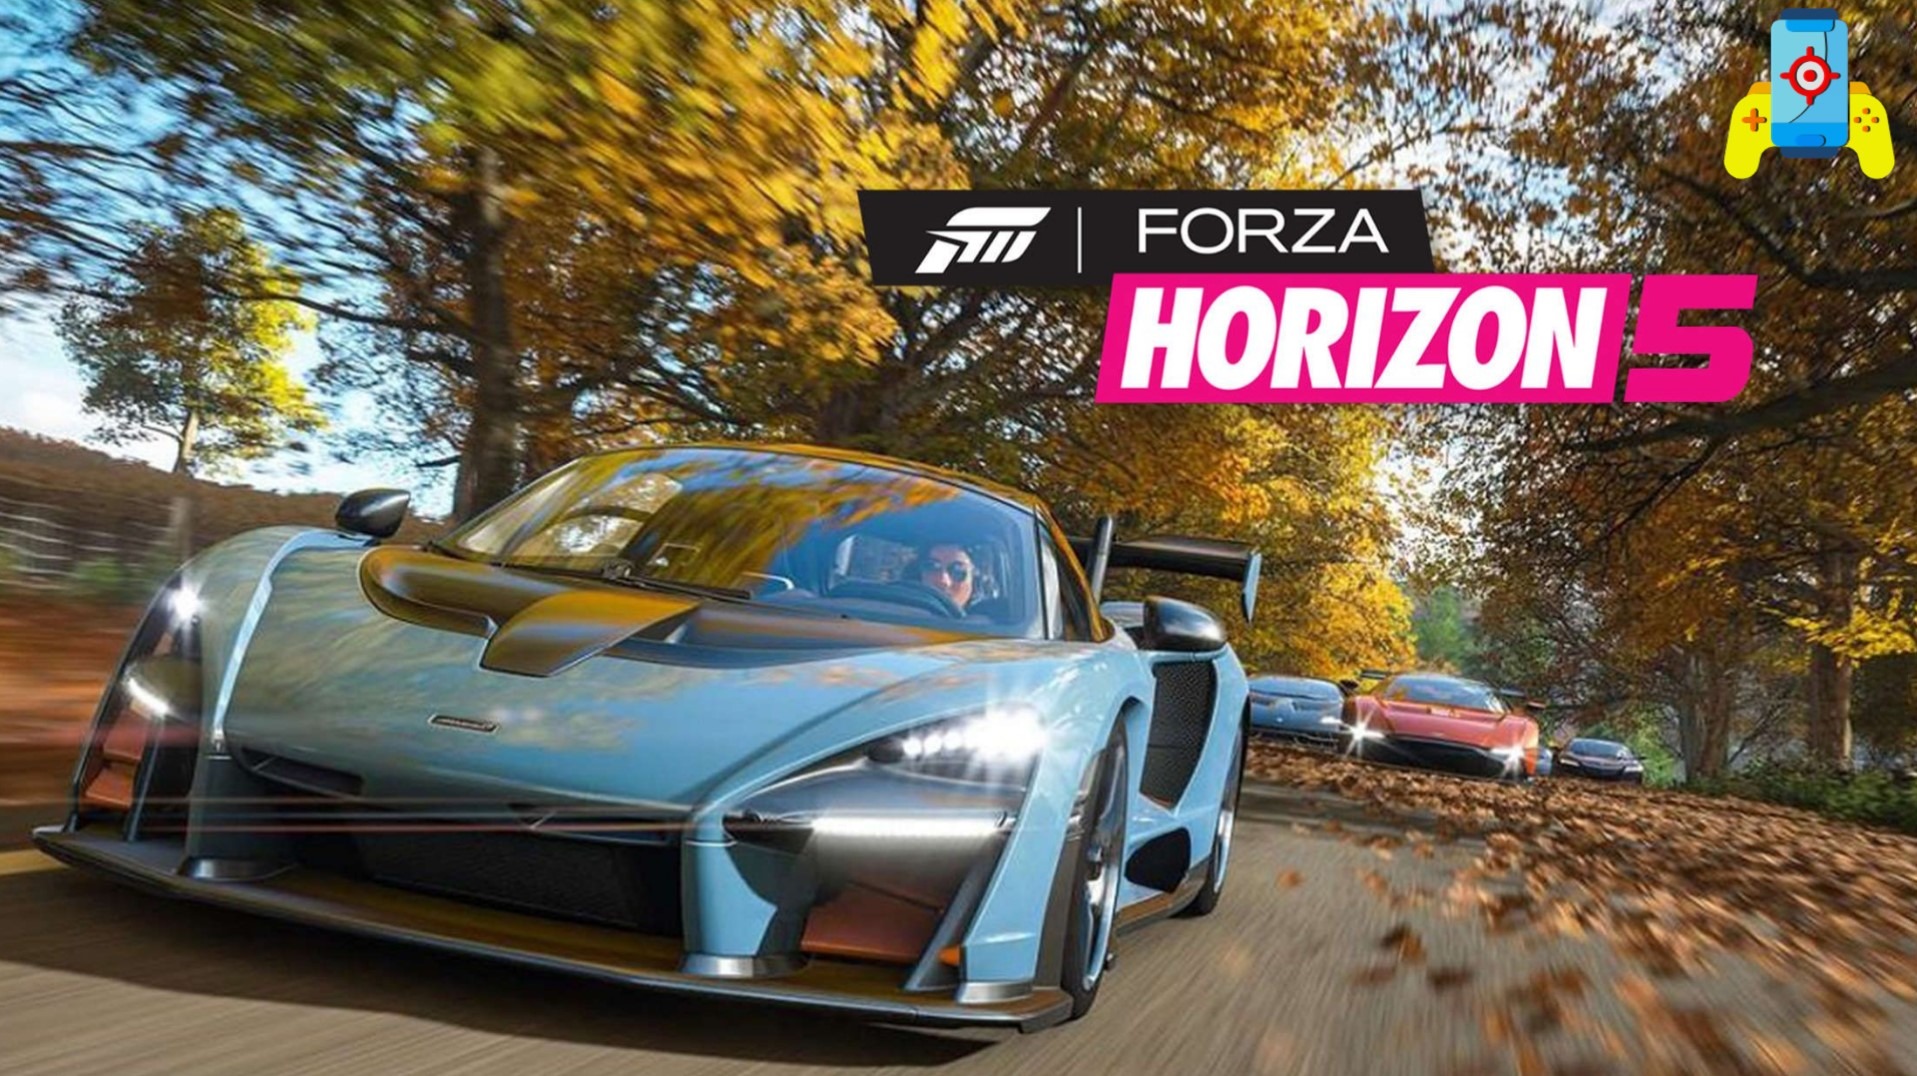 Forza Horizon 5 (Знакомство и игрой,первый запуск на своем калькуляторе:D) и The crew 2